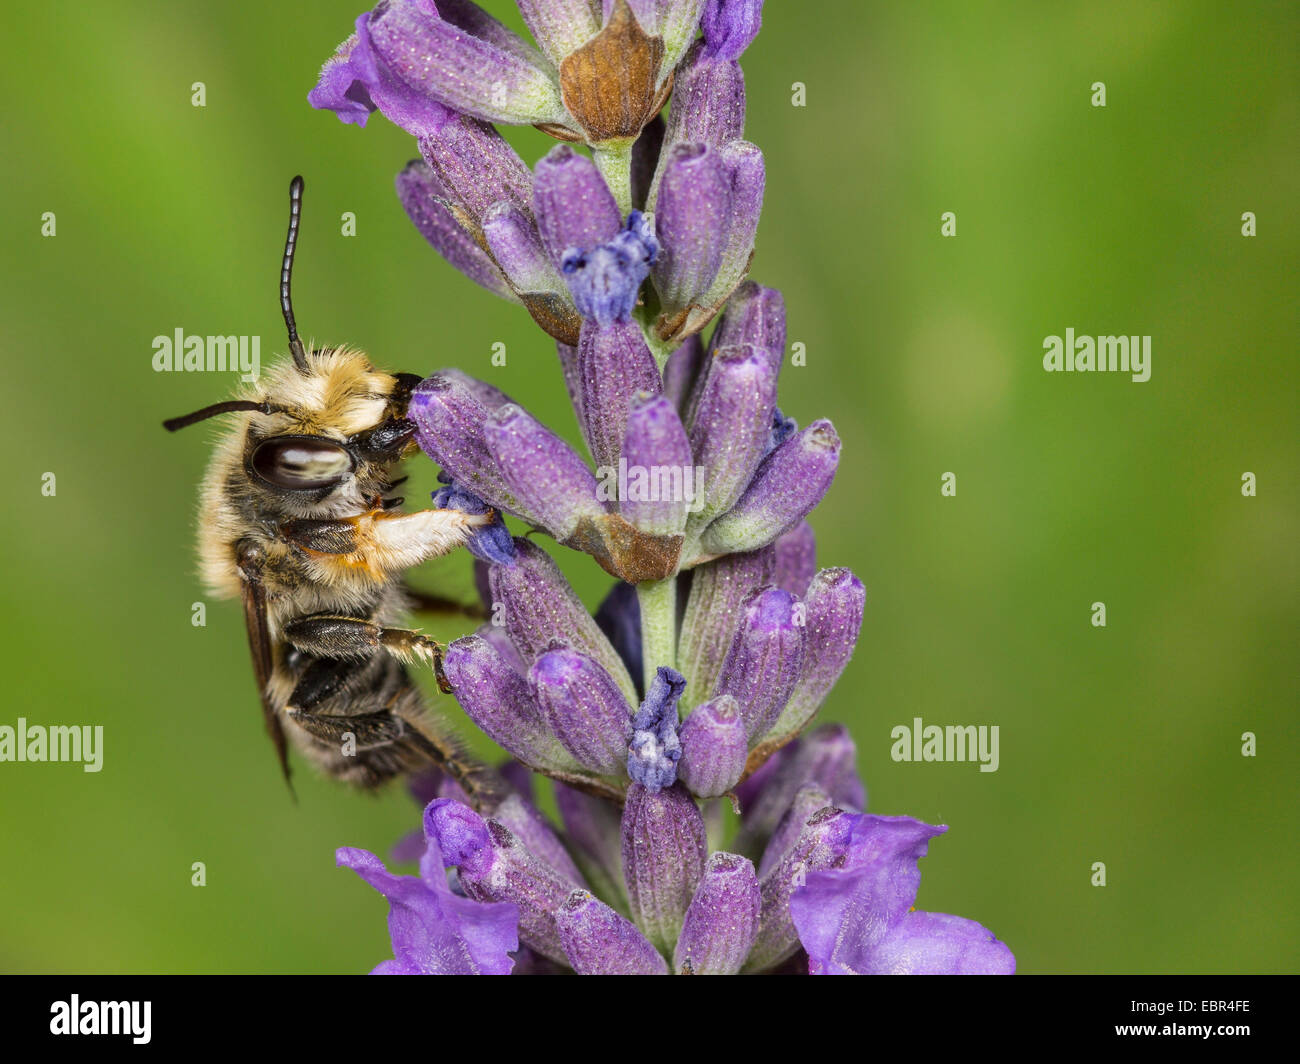 (Megachile willughbiella découpeuse), mâle sur l'anglais de fleurs de lavande (Lavandula angustifolia), Allemagne Banque D'Images